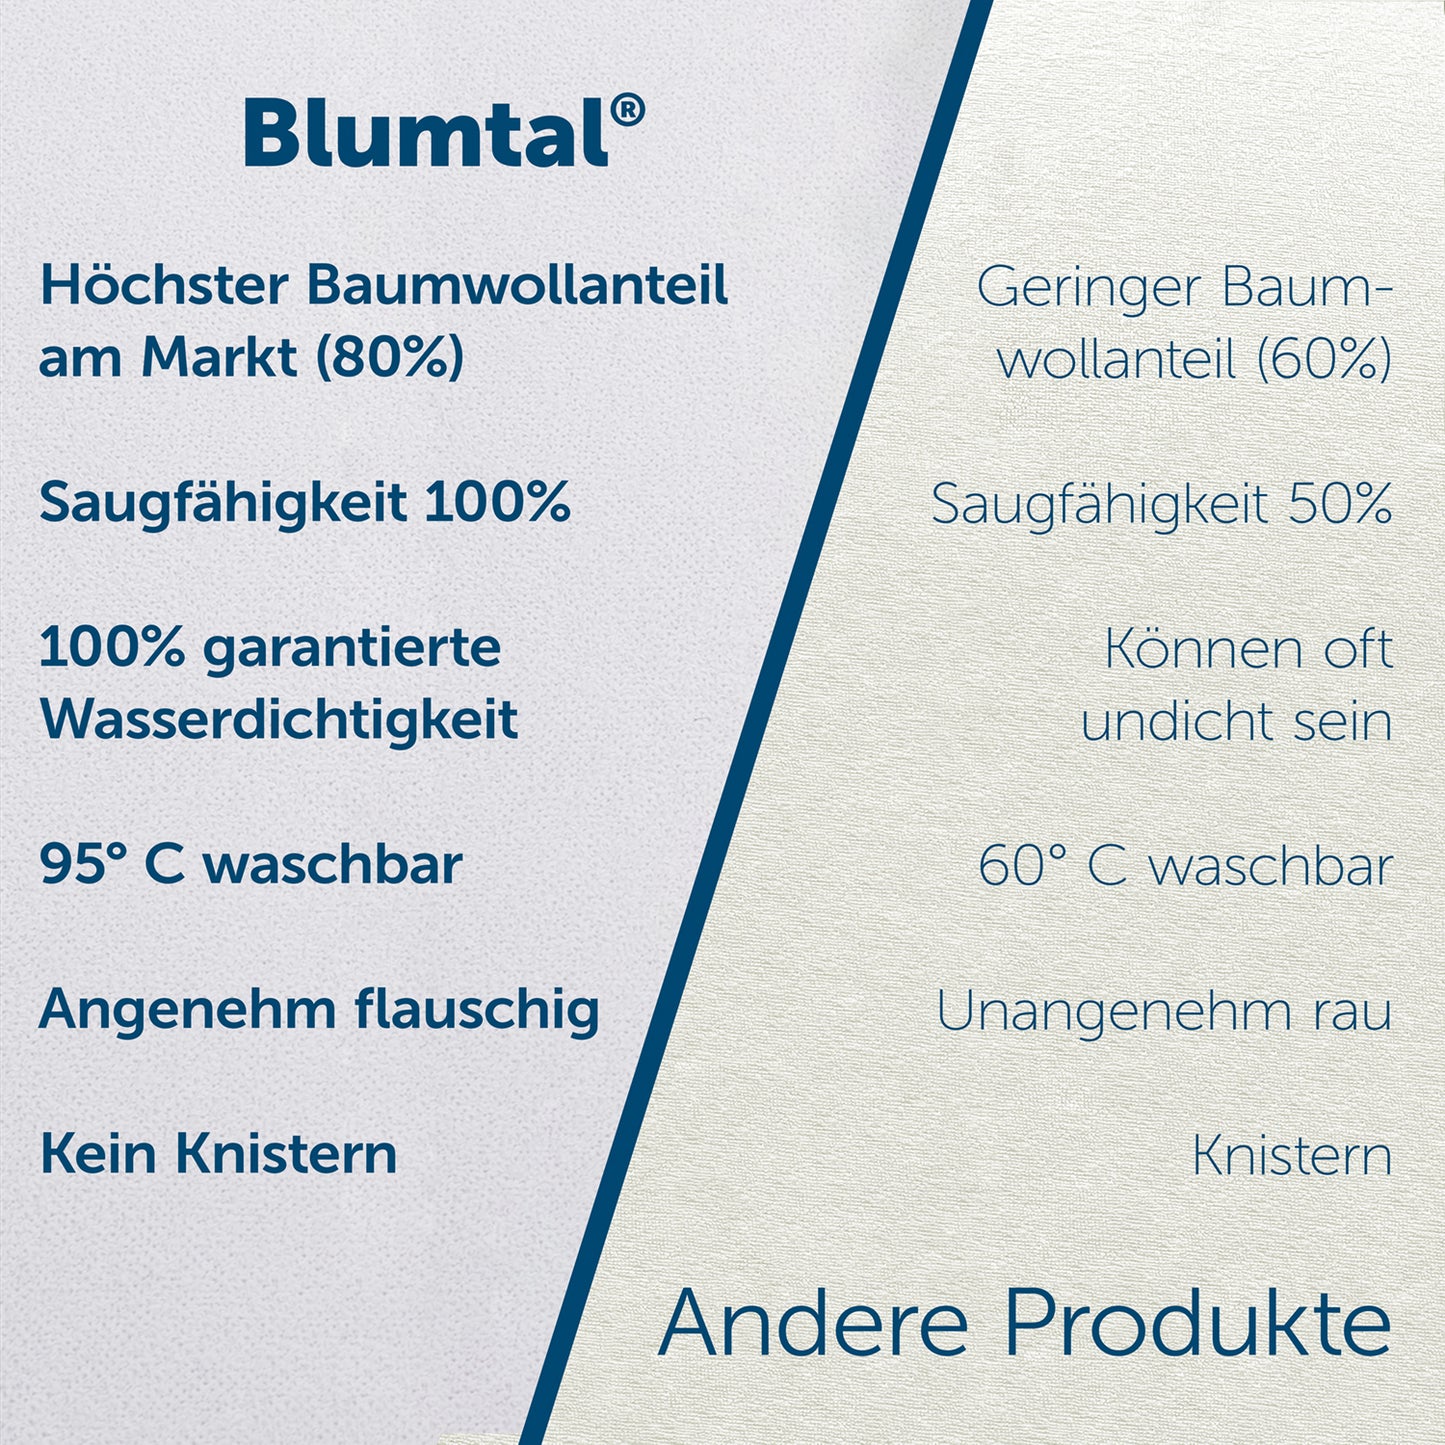 Vergleichstabelle mit Merkmalen des Blumtal Matratzenschoners gegenüber anderen Produkten, betont Vorteile wie höchsten Baumwollanteil und 95°C Waschbarkeit.